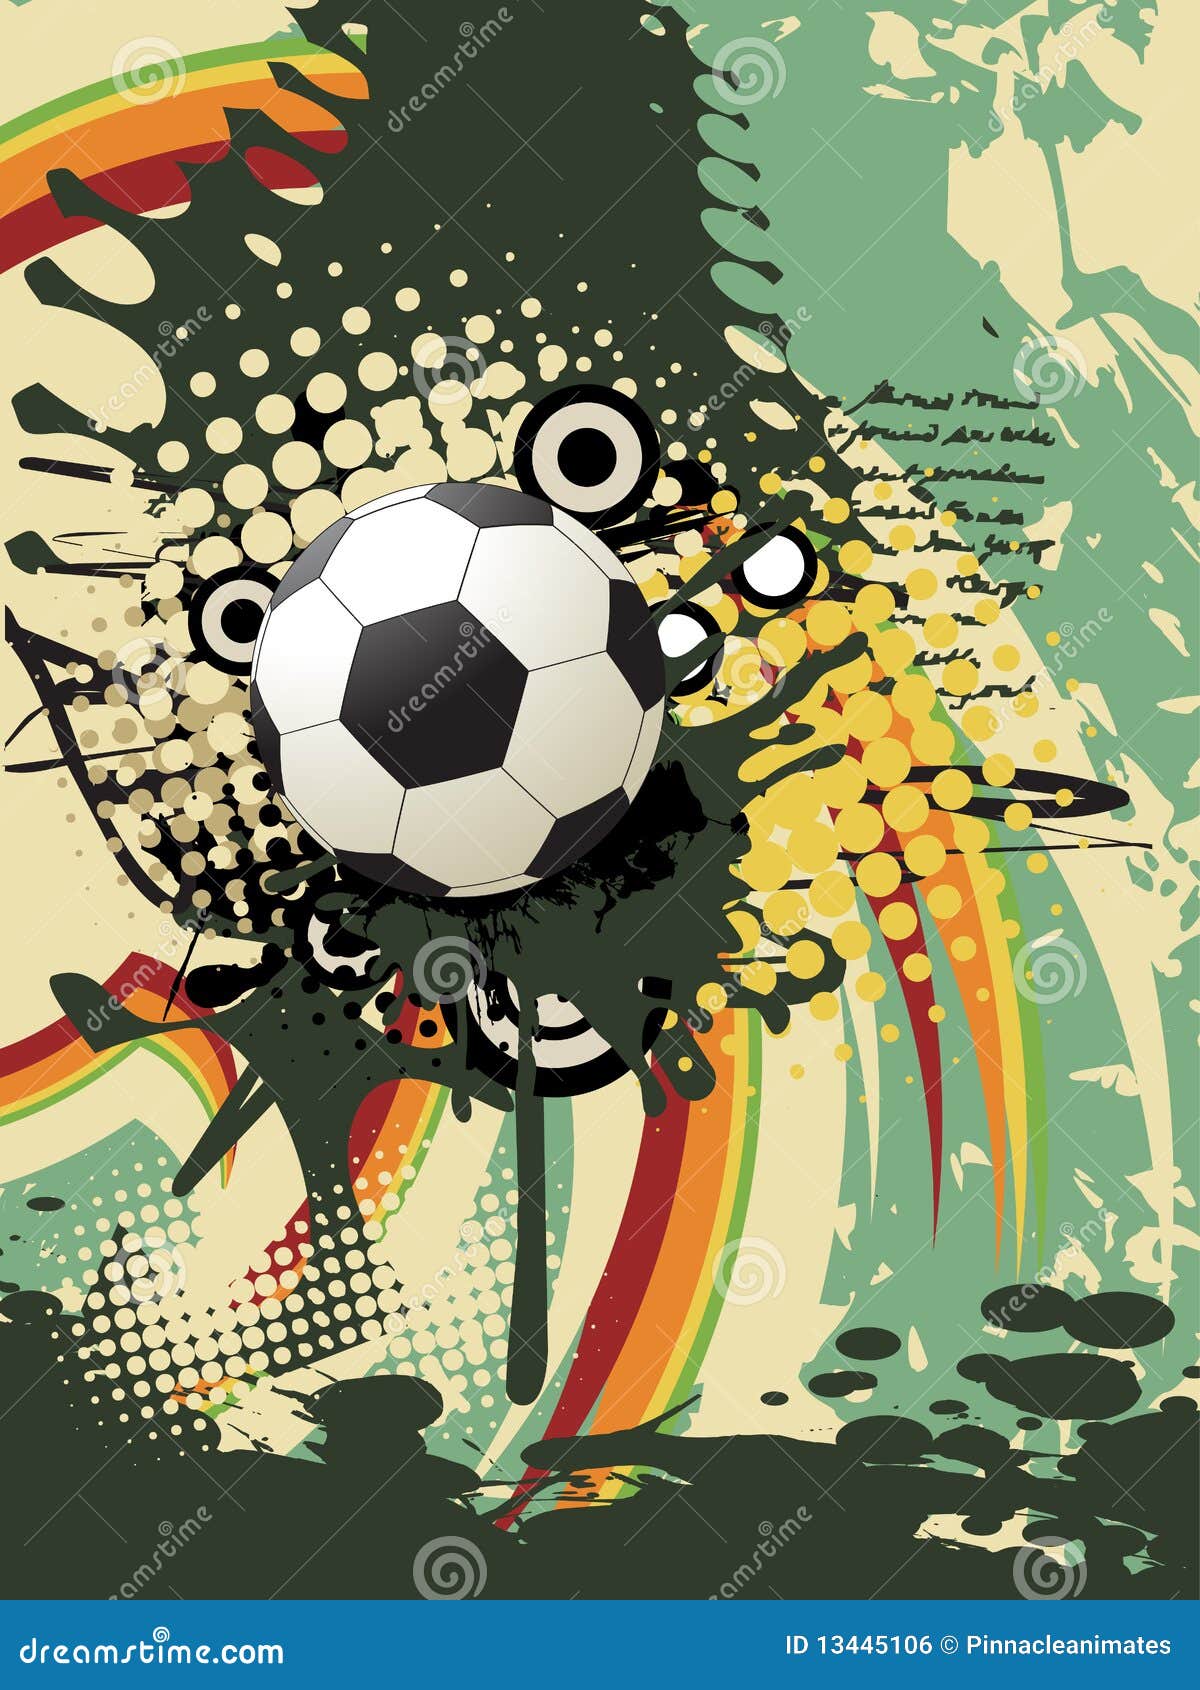 Arte futebol Vectors & Illustrations for Free Download